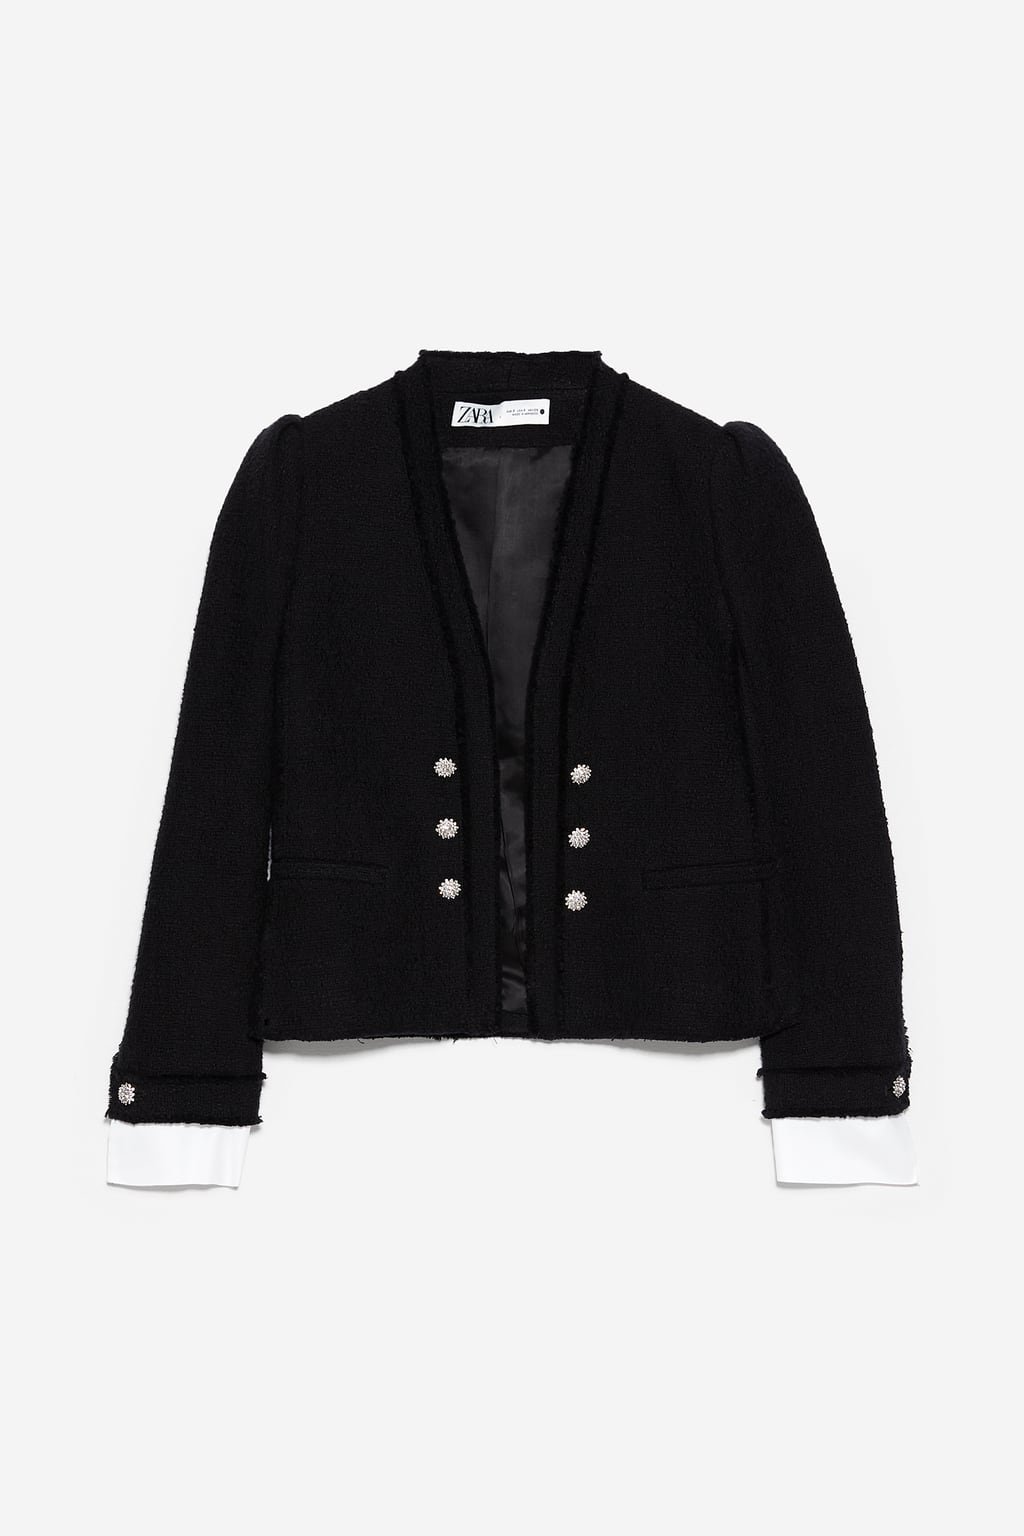 Zara+Tweed+Jacket+with+Poplin+in+Black.jpg